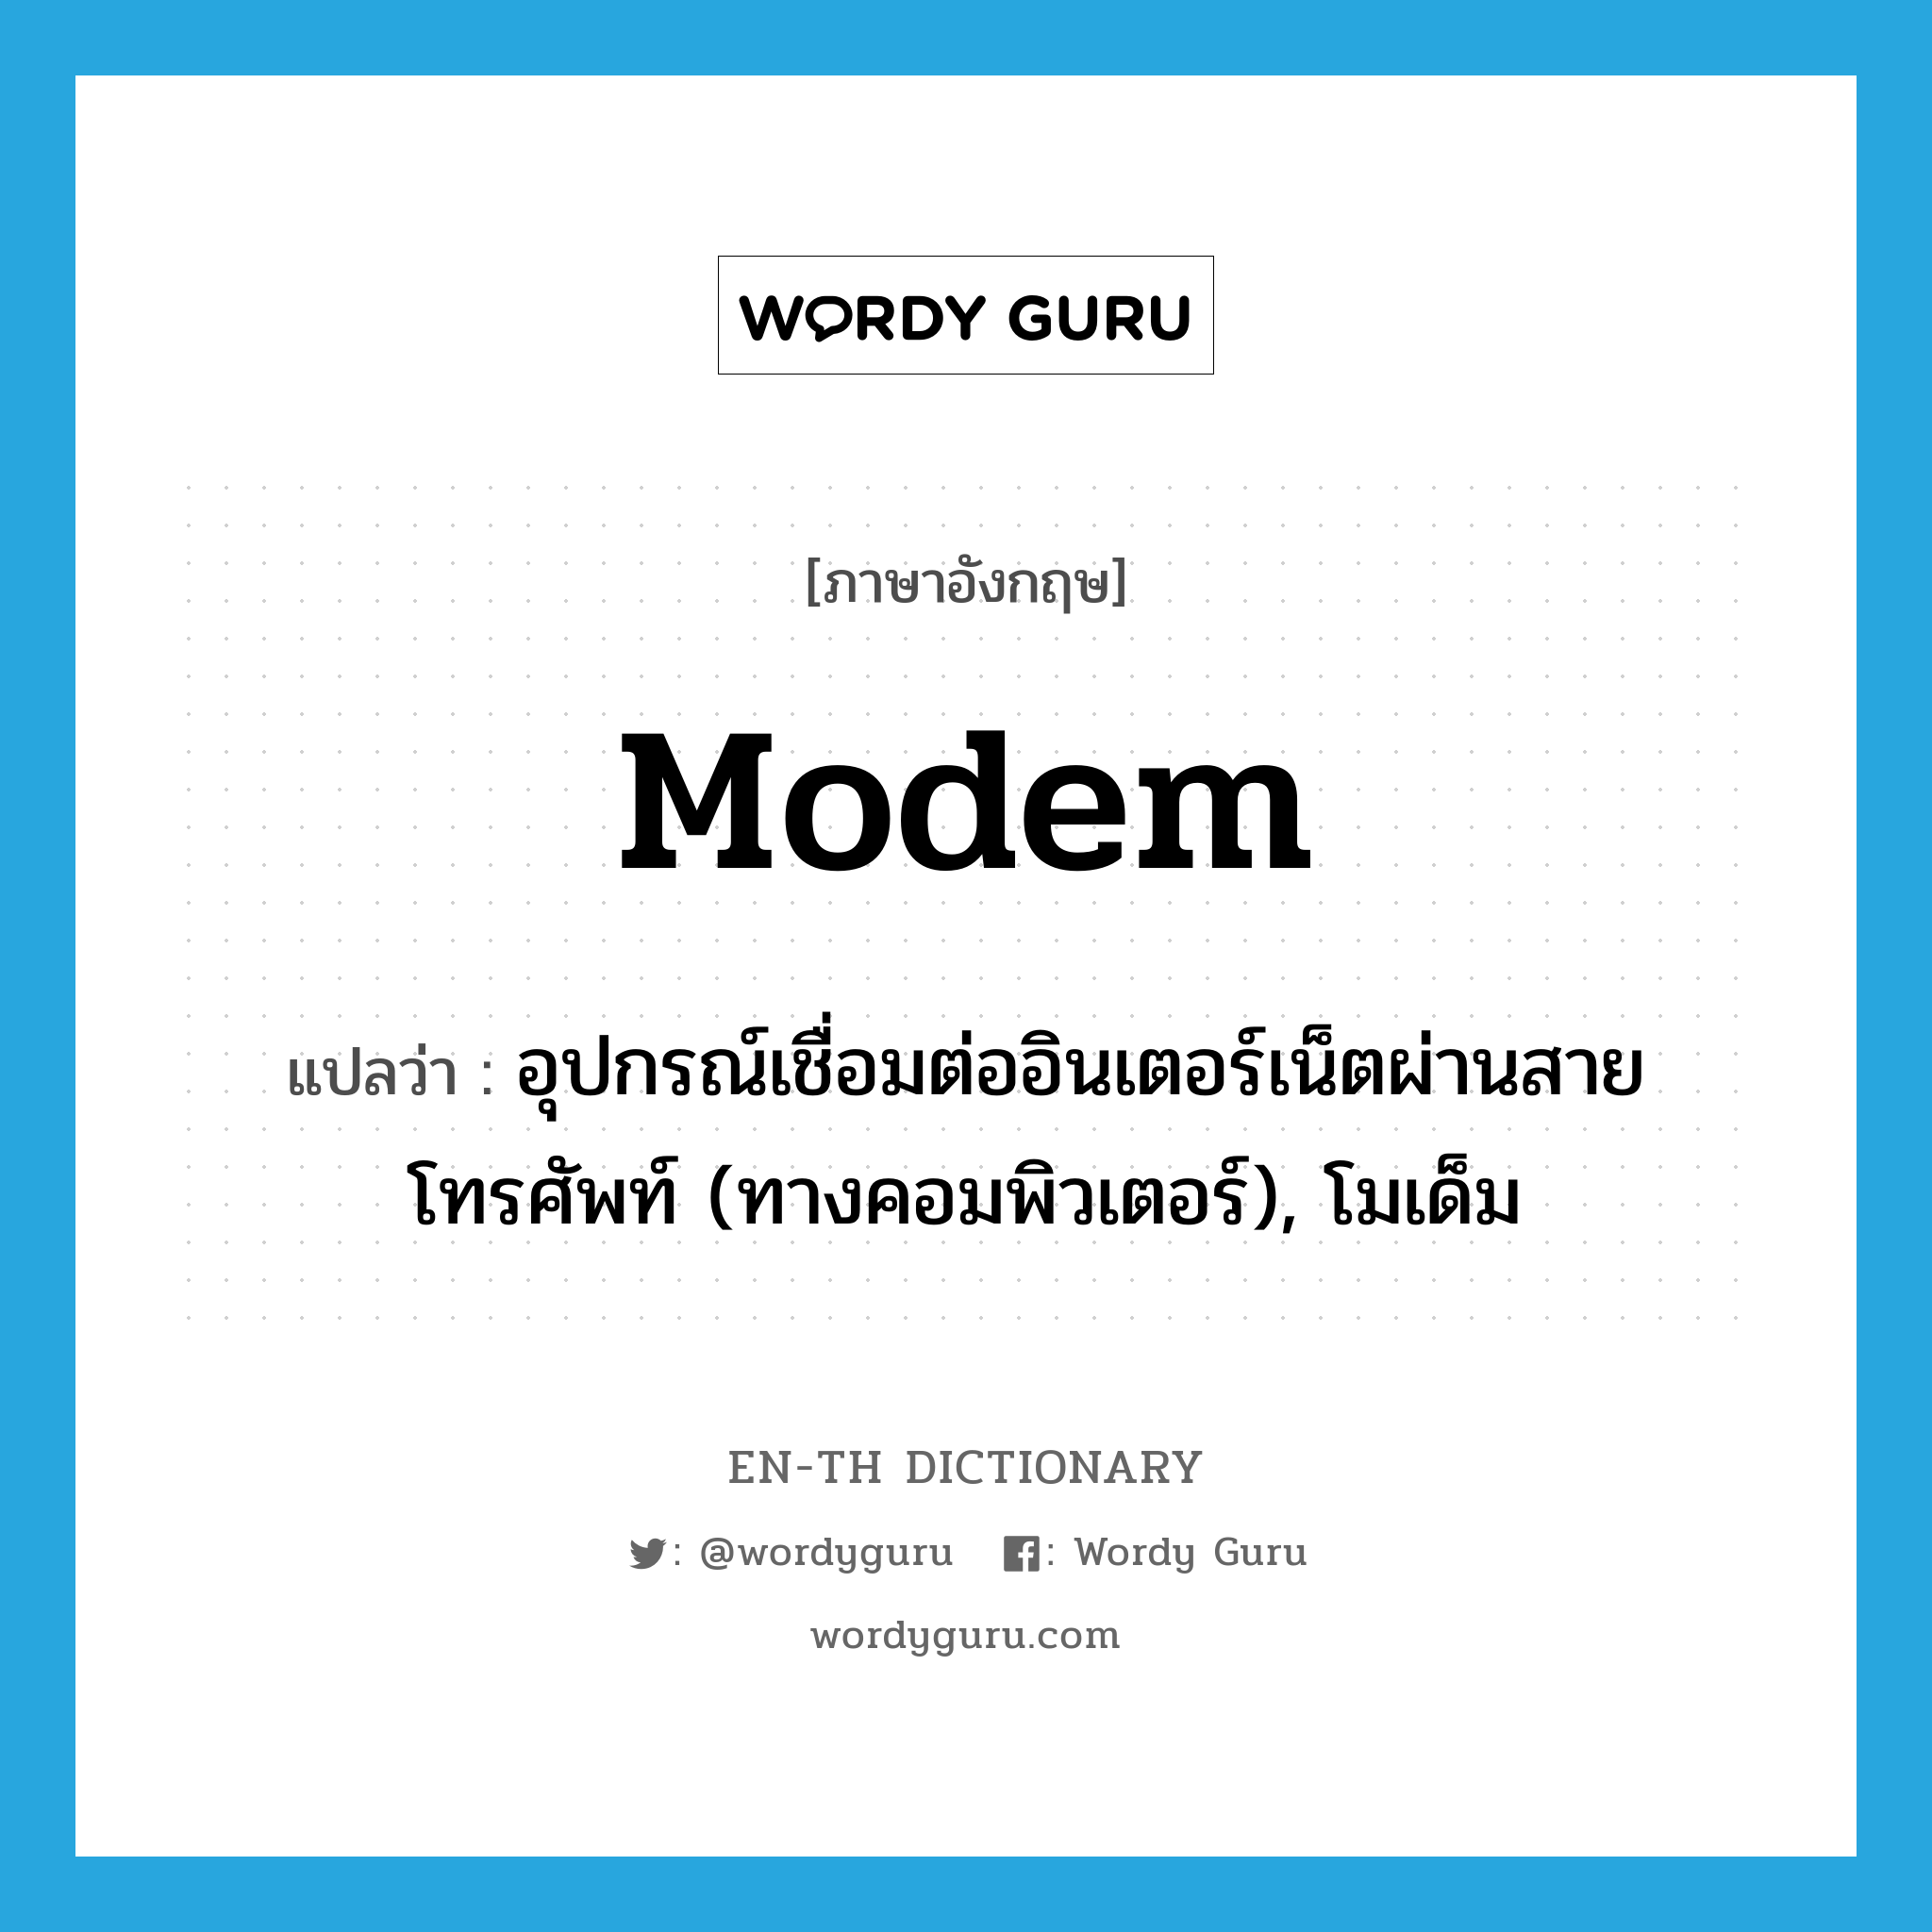 modem แปลว่า?, คำศัพท์ภาษาอังกฤษ modem แปลว่า อุปกรณ์เชื่อมต่ออินเตอร์เน็ตผ่านสายโทรศัพท์ (ทางคอมพิวเตอร์), โมเด็ม ประเภท N หมวด N